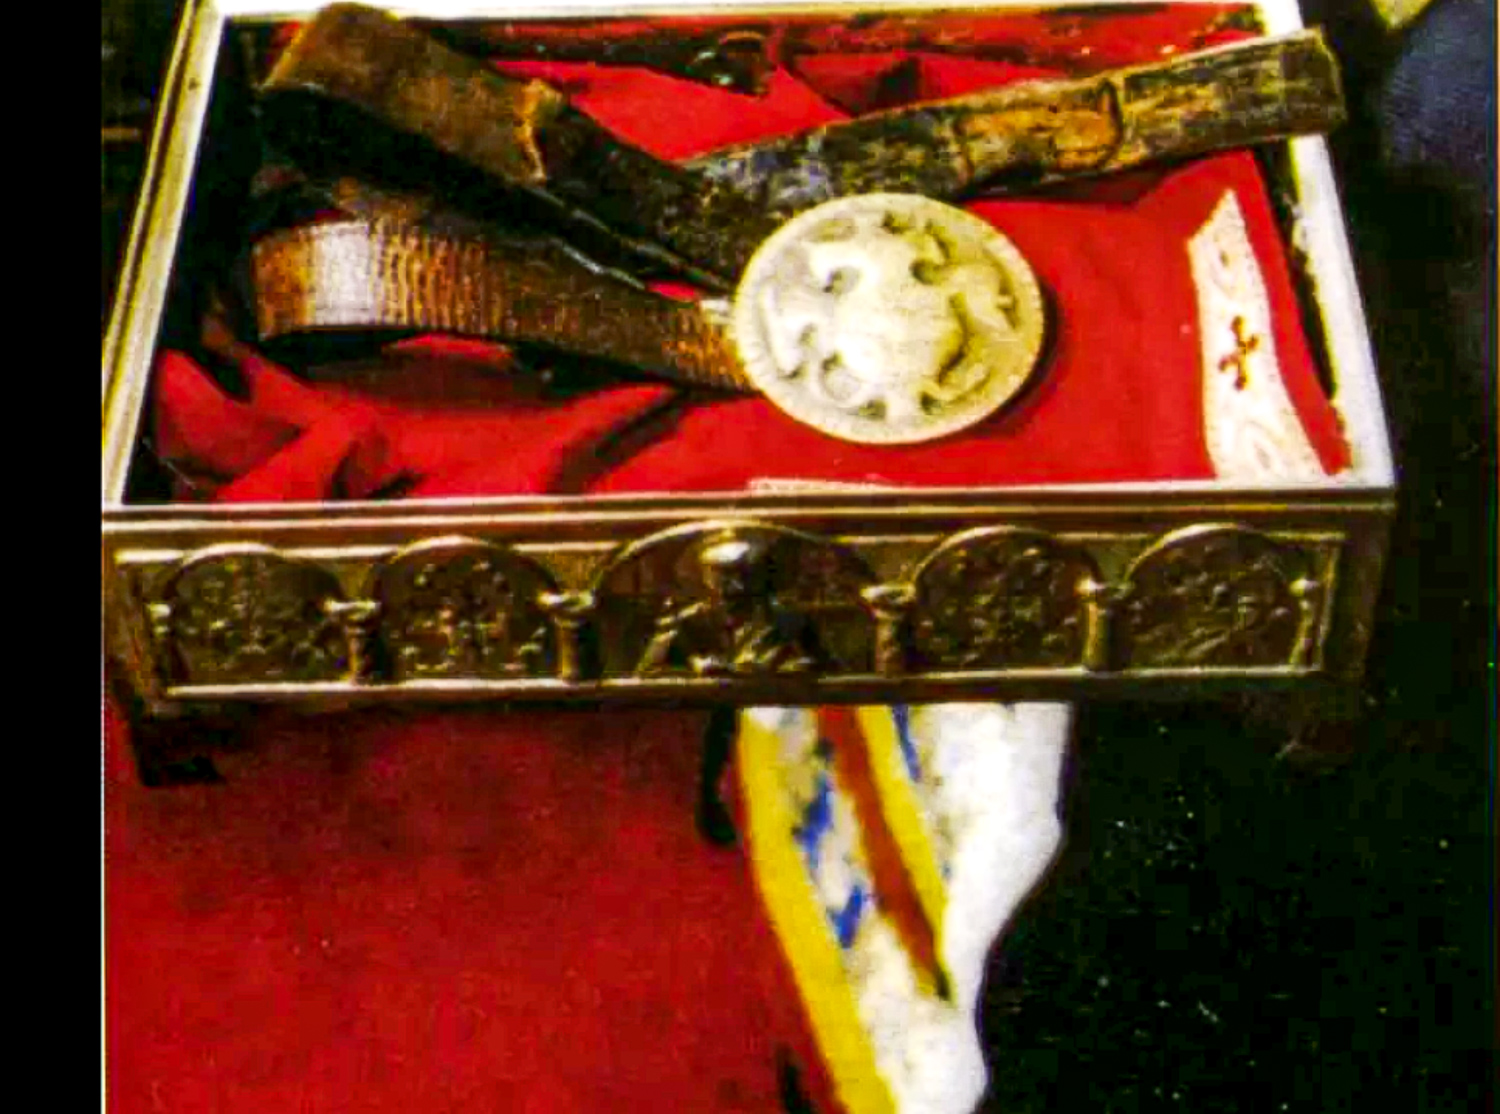 Ремень с царским орлом, которым перепоясывался святой Иоанн Русский, находясь в рабстве. Ныне — одна из святынь Элладской Церкви